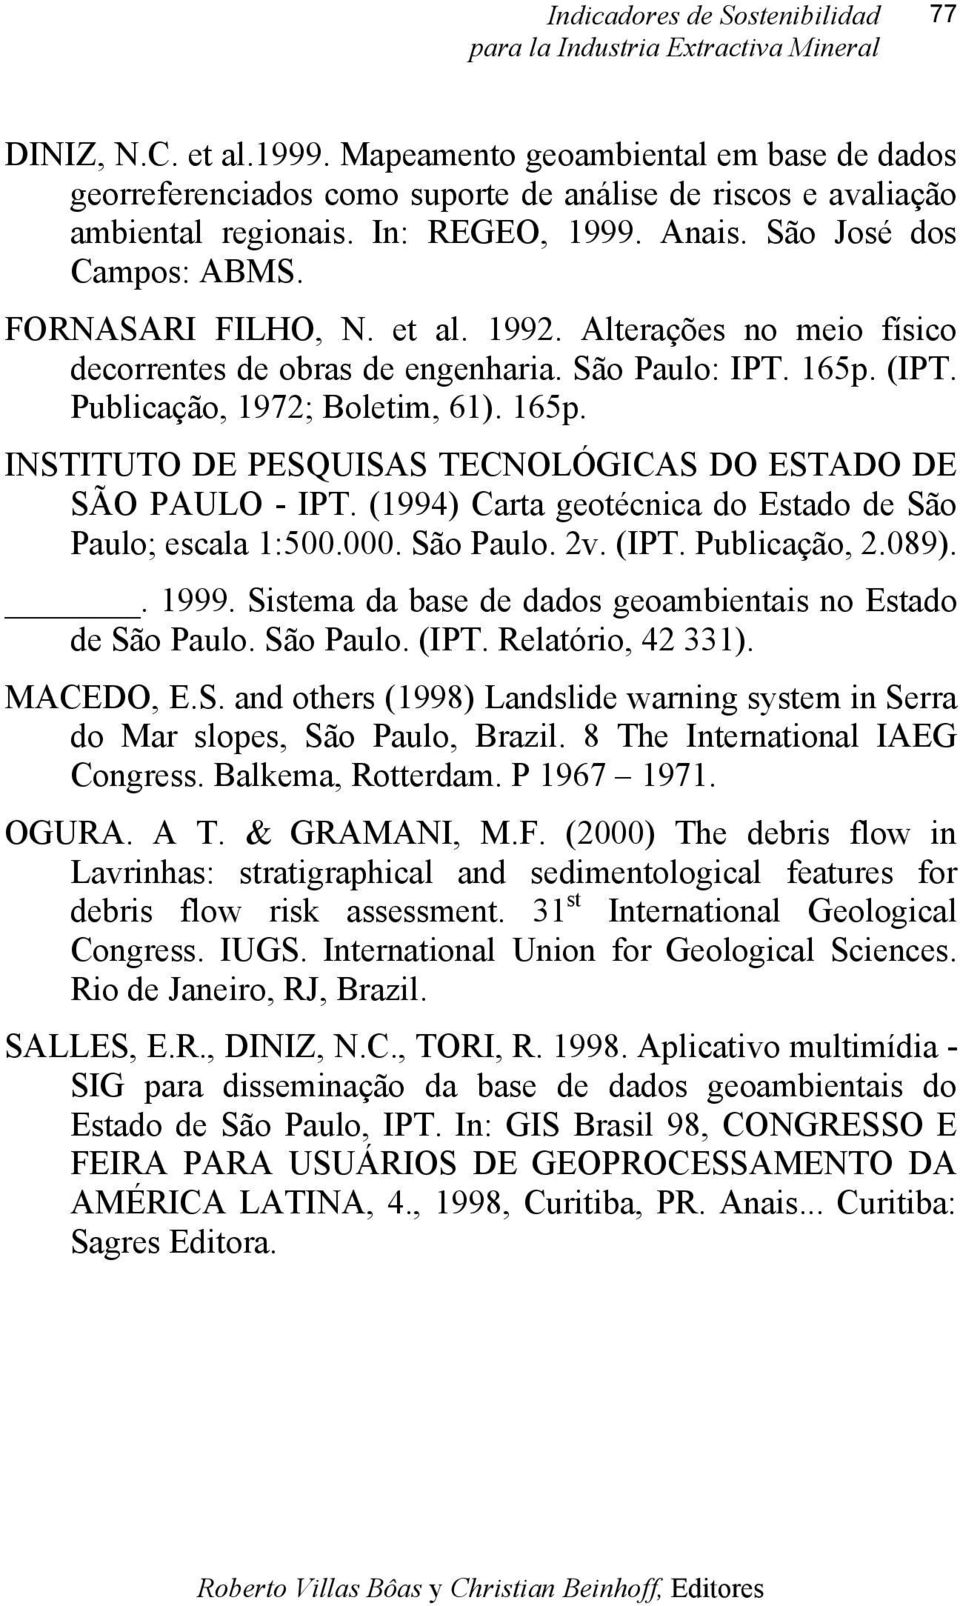 (IPT. Publicação, 1972; Boletim, 61). 165p. INSTITUTO DE PESQUISAS TECNOLÓGICAS DO ESTADO DE SÃO PAULO - IPT. (1994) Carta geotécnica do Estado de São Paulo; escala 1:500.000. São Paulo. 2v. (IPT.